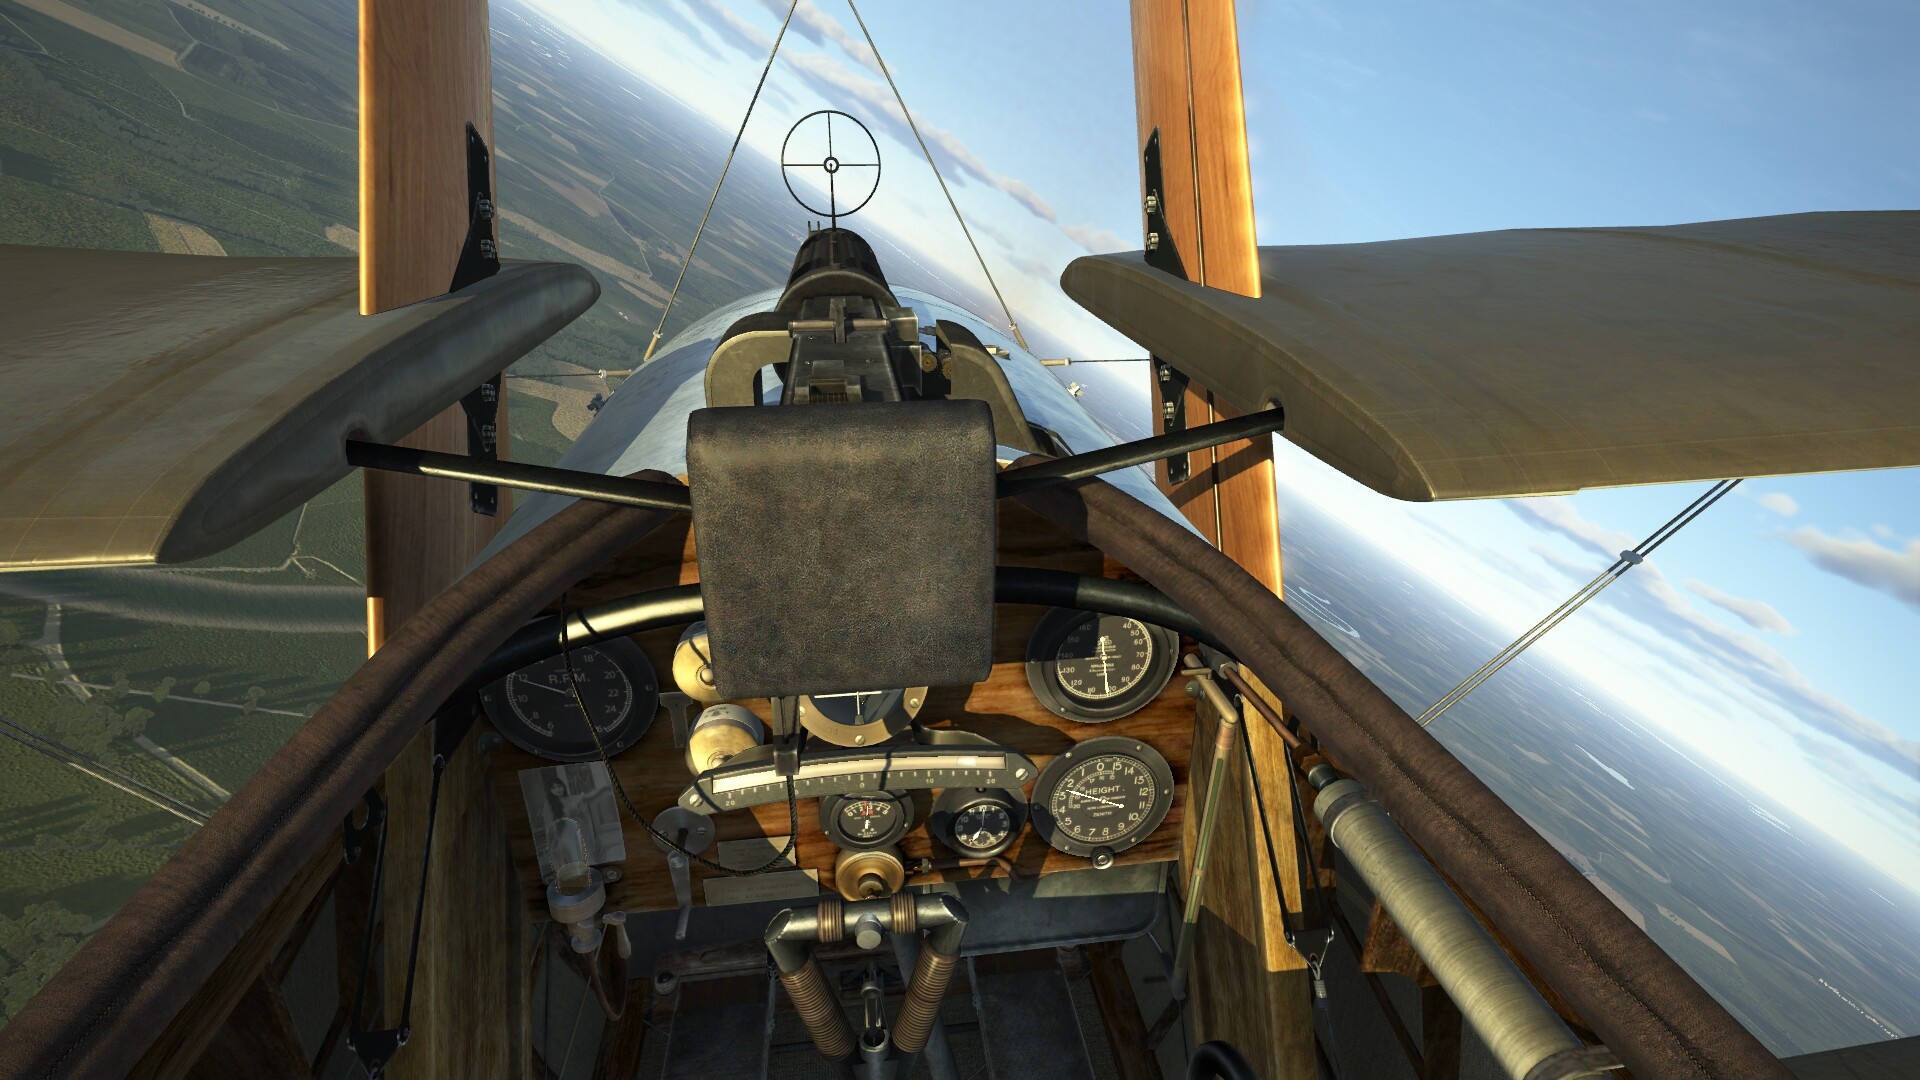 Desprecio Oswald policía IL-2 Sturmovik: Flying Circus - Volume II en Steam